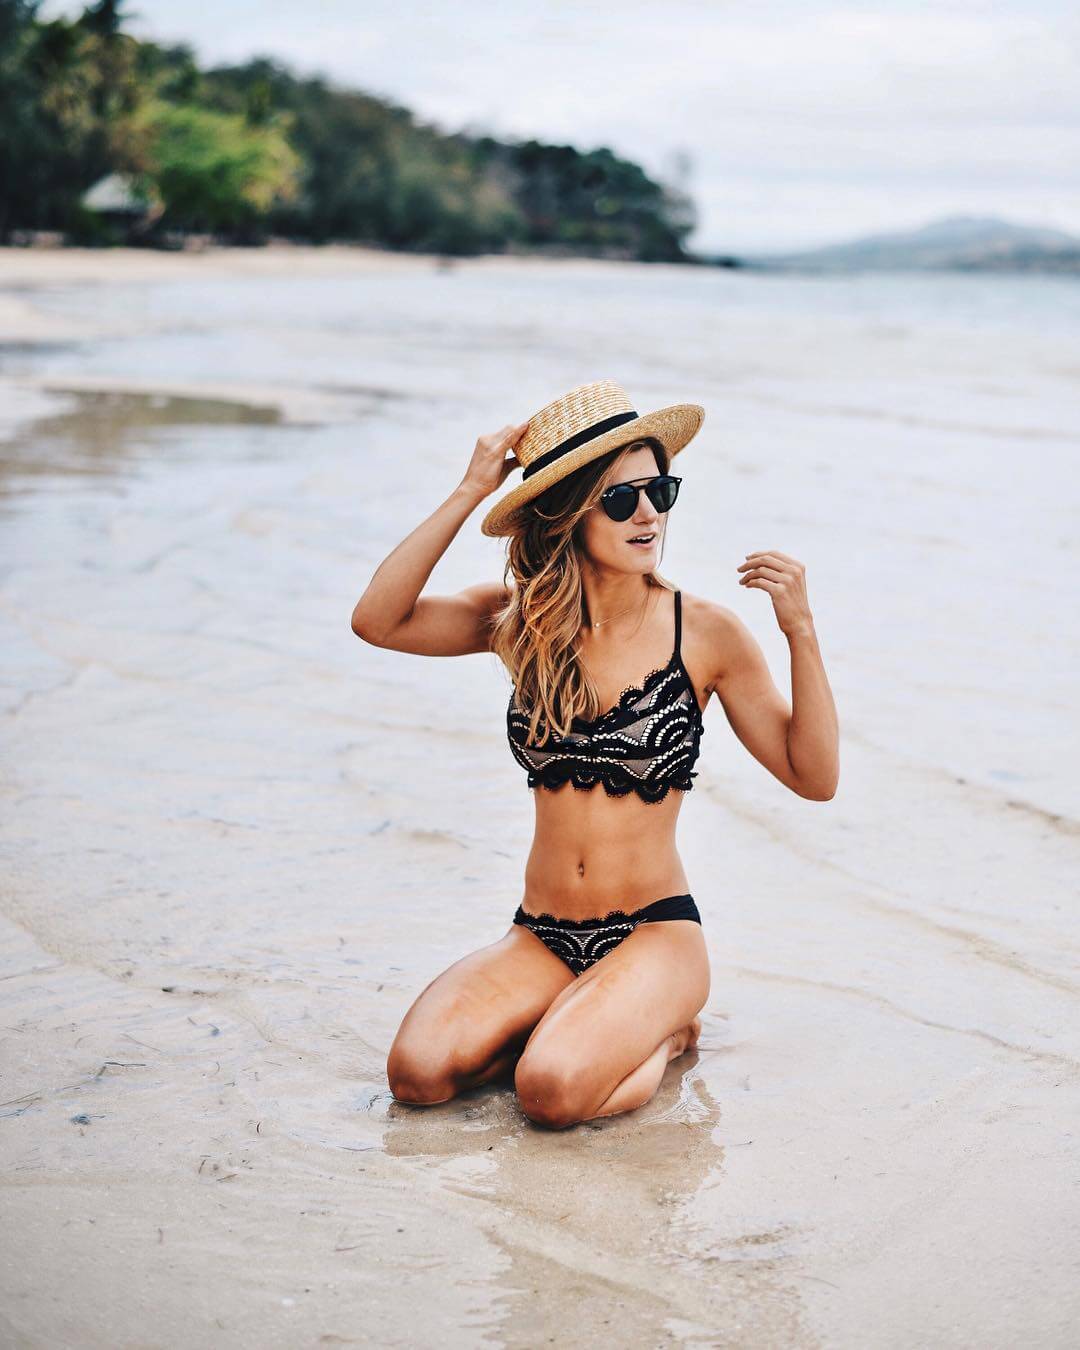 brighton keller on the beach of fiji island wearing black lace bikini 